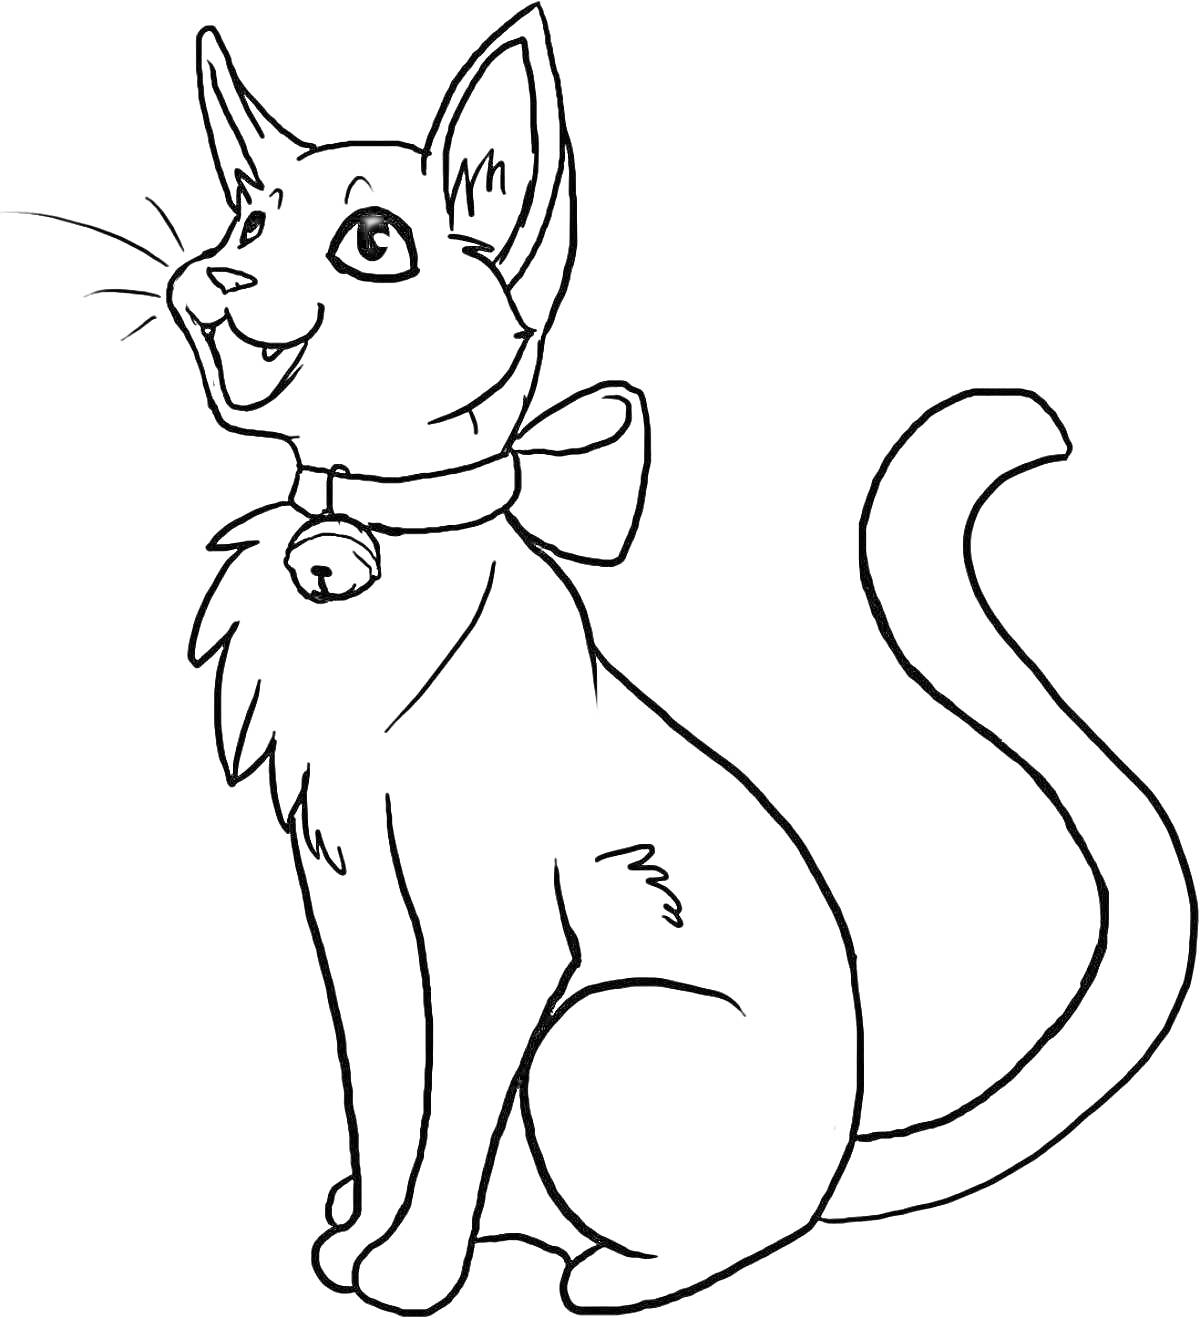 Раскраска Кошка с бантом и колокольчиком на шее